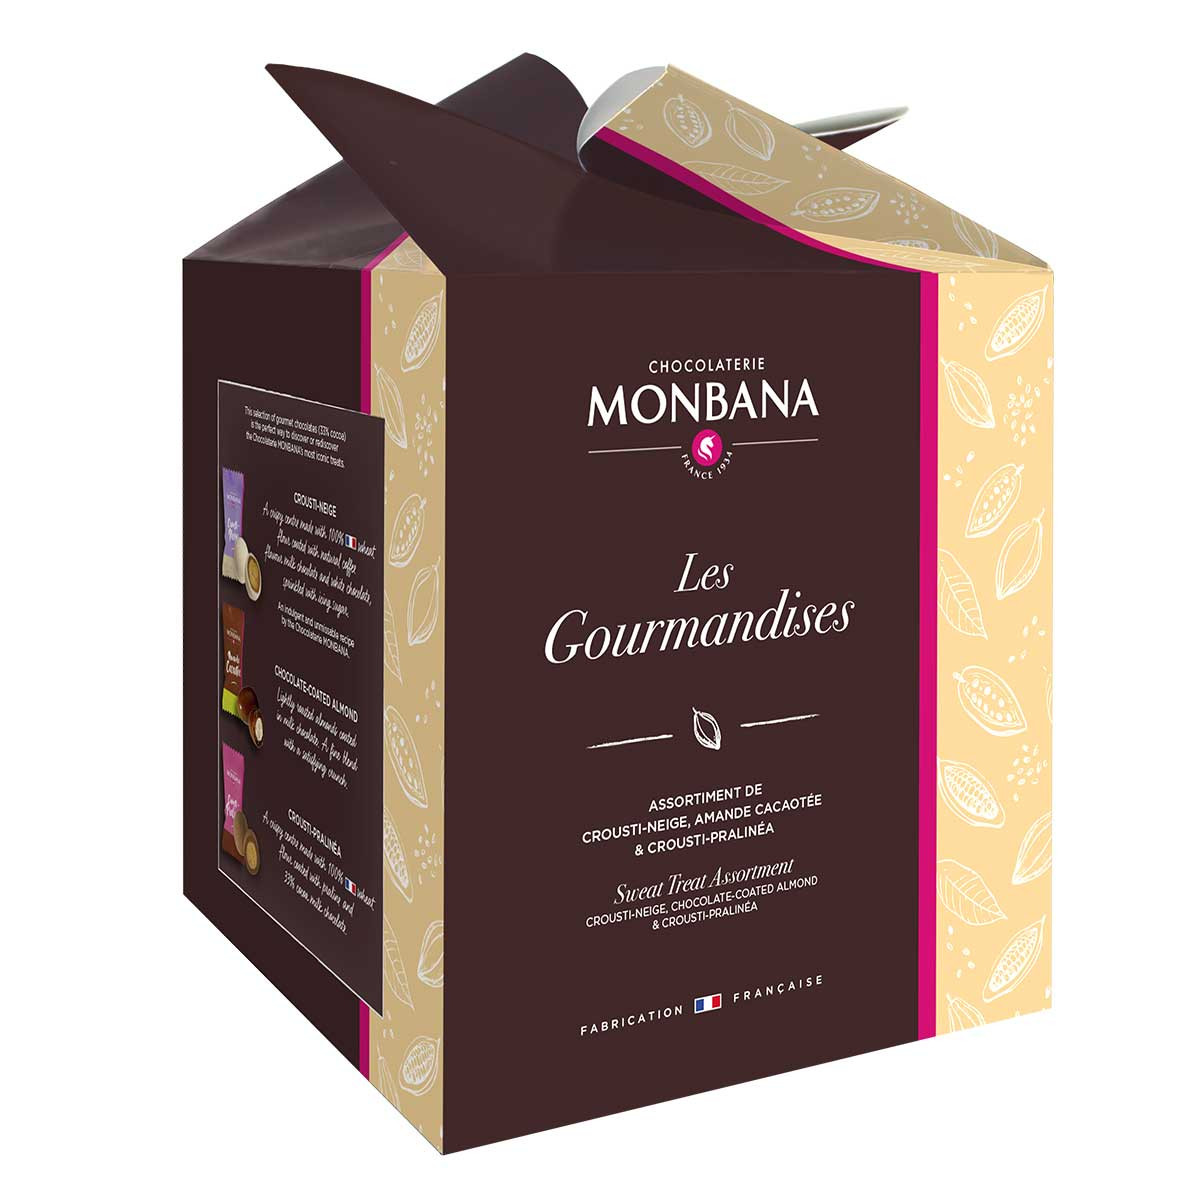 200 carrés de chocolat au lait - NAPOLITAINS - Monbana